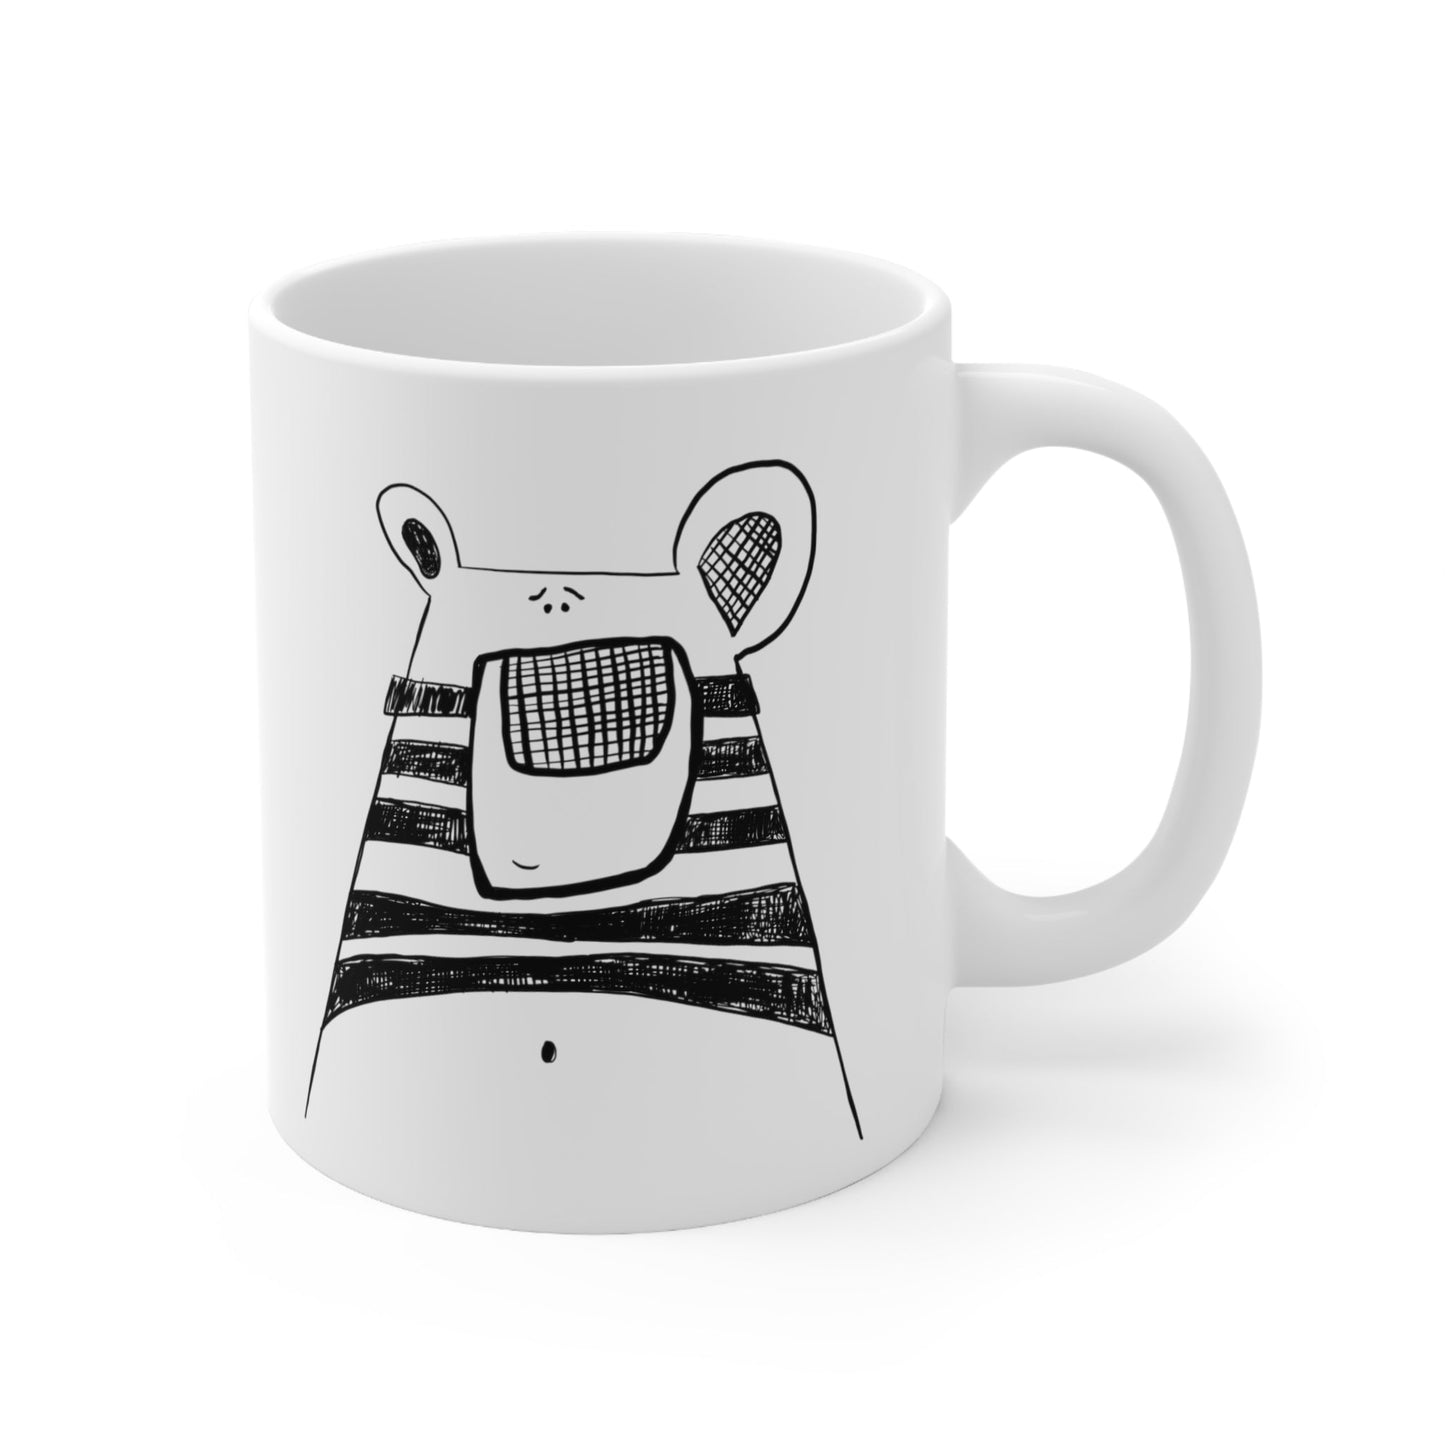 Bear belly button mug - The muggin shop